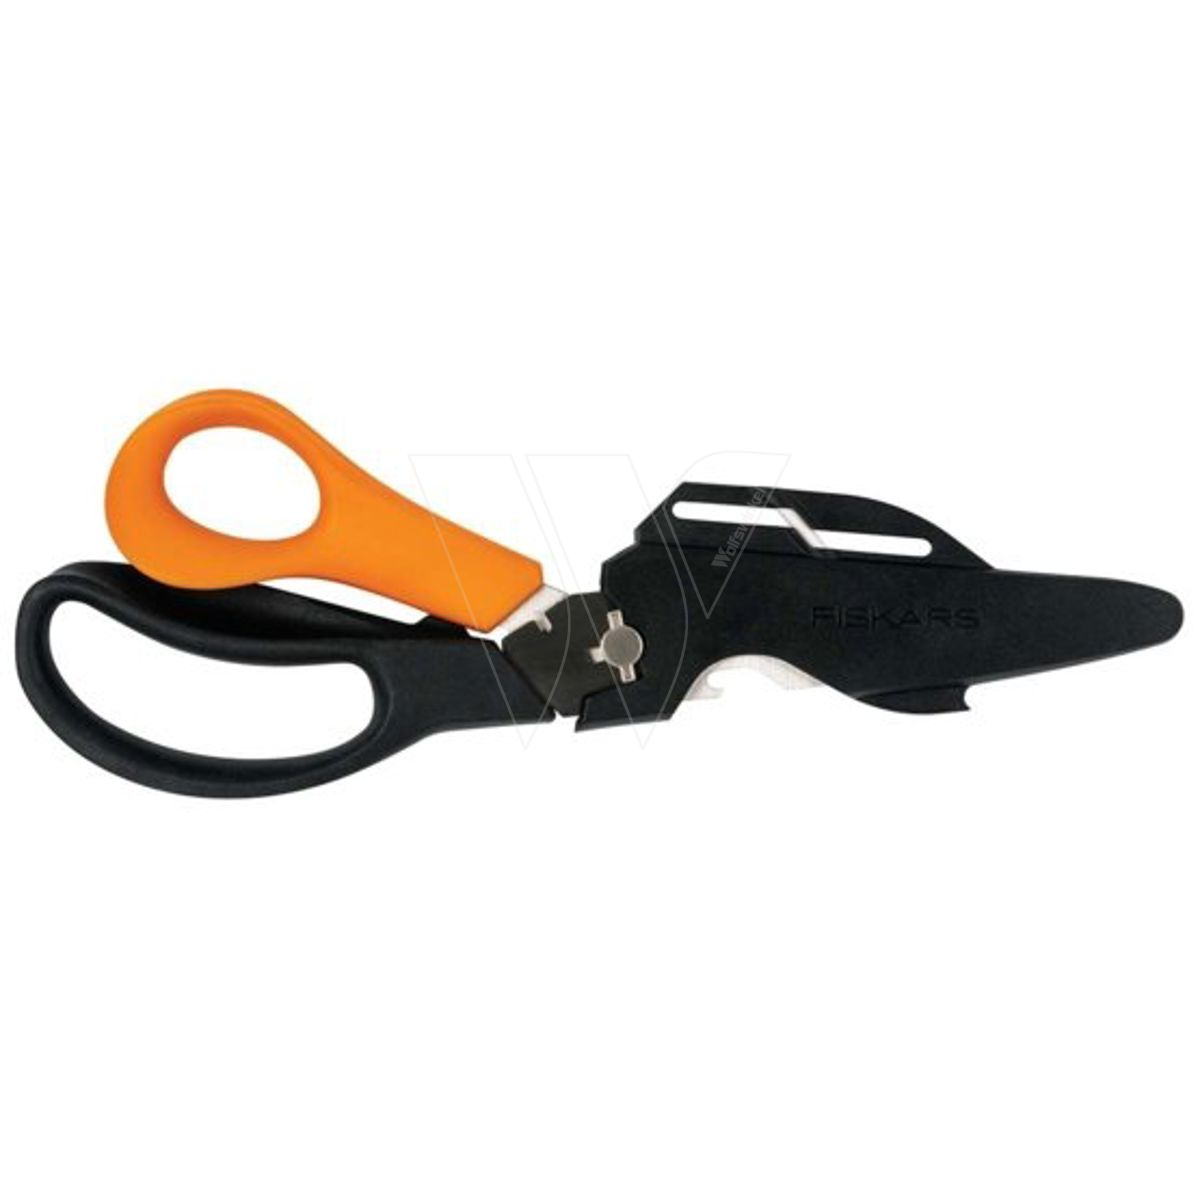 Fiskars solid multifunction scissors sp